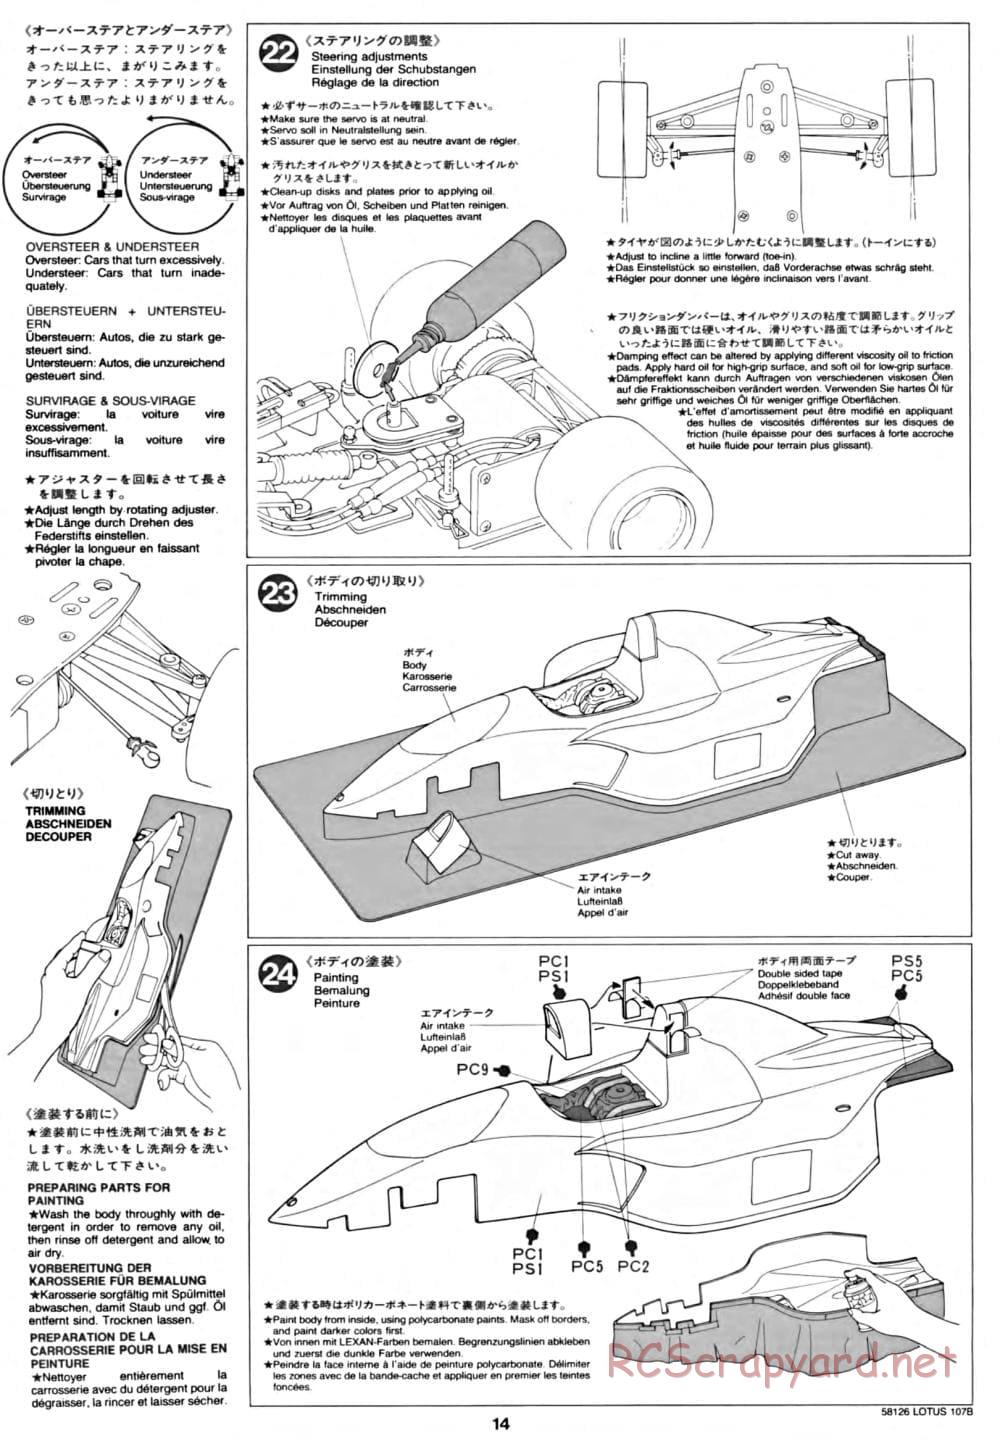 Tamiya - Lotus 107B Ford - F103 Chassis - Manual - Page 14